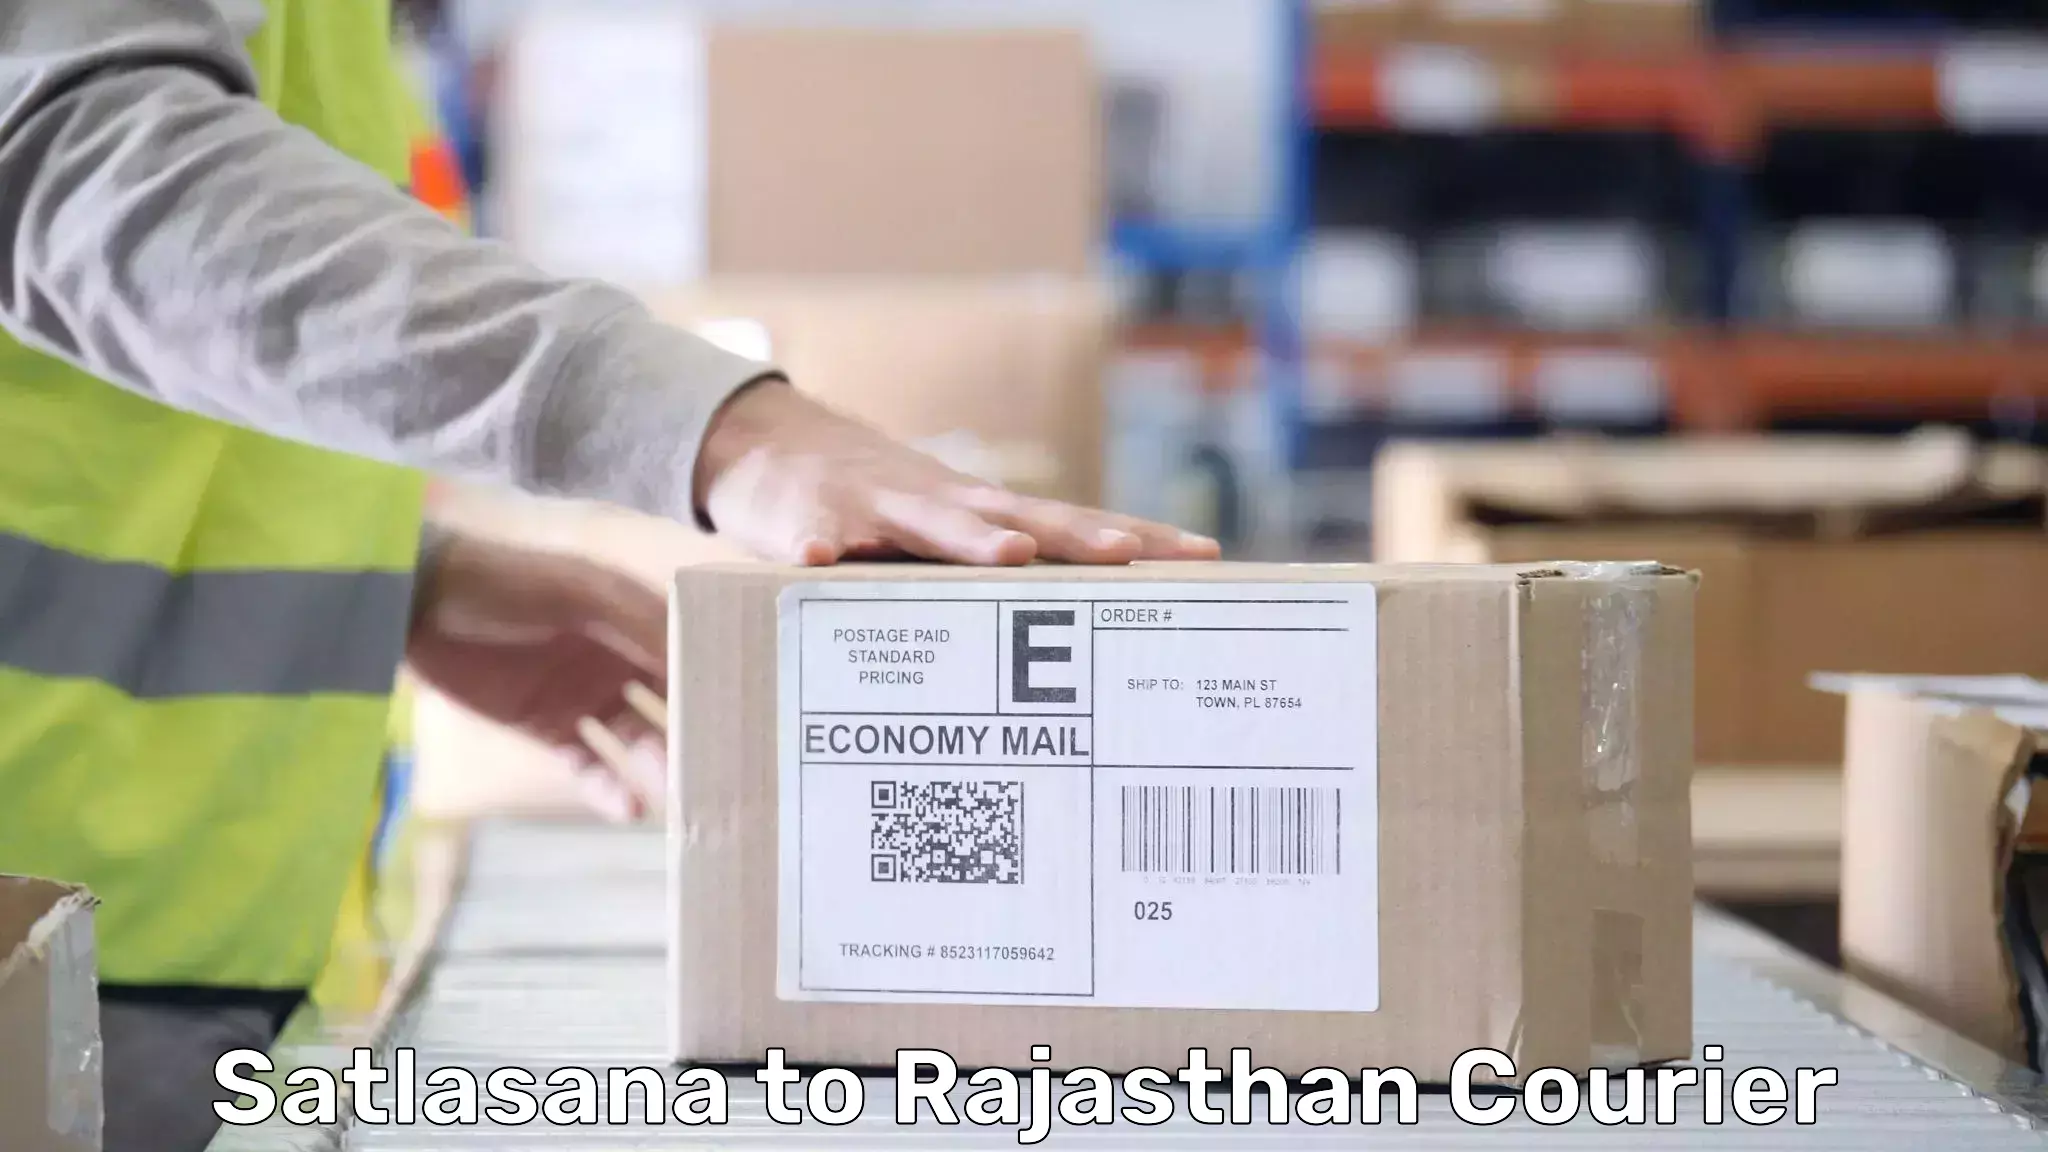 Baggage transport management Satlasana to Rajasthan